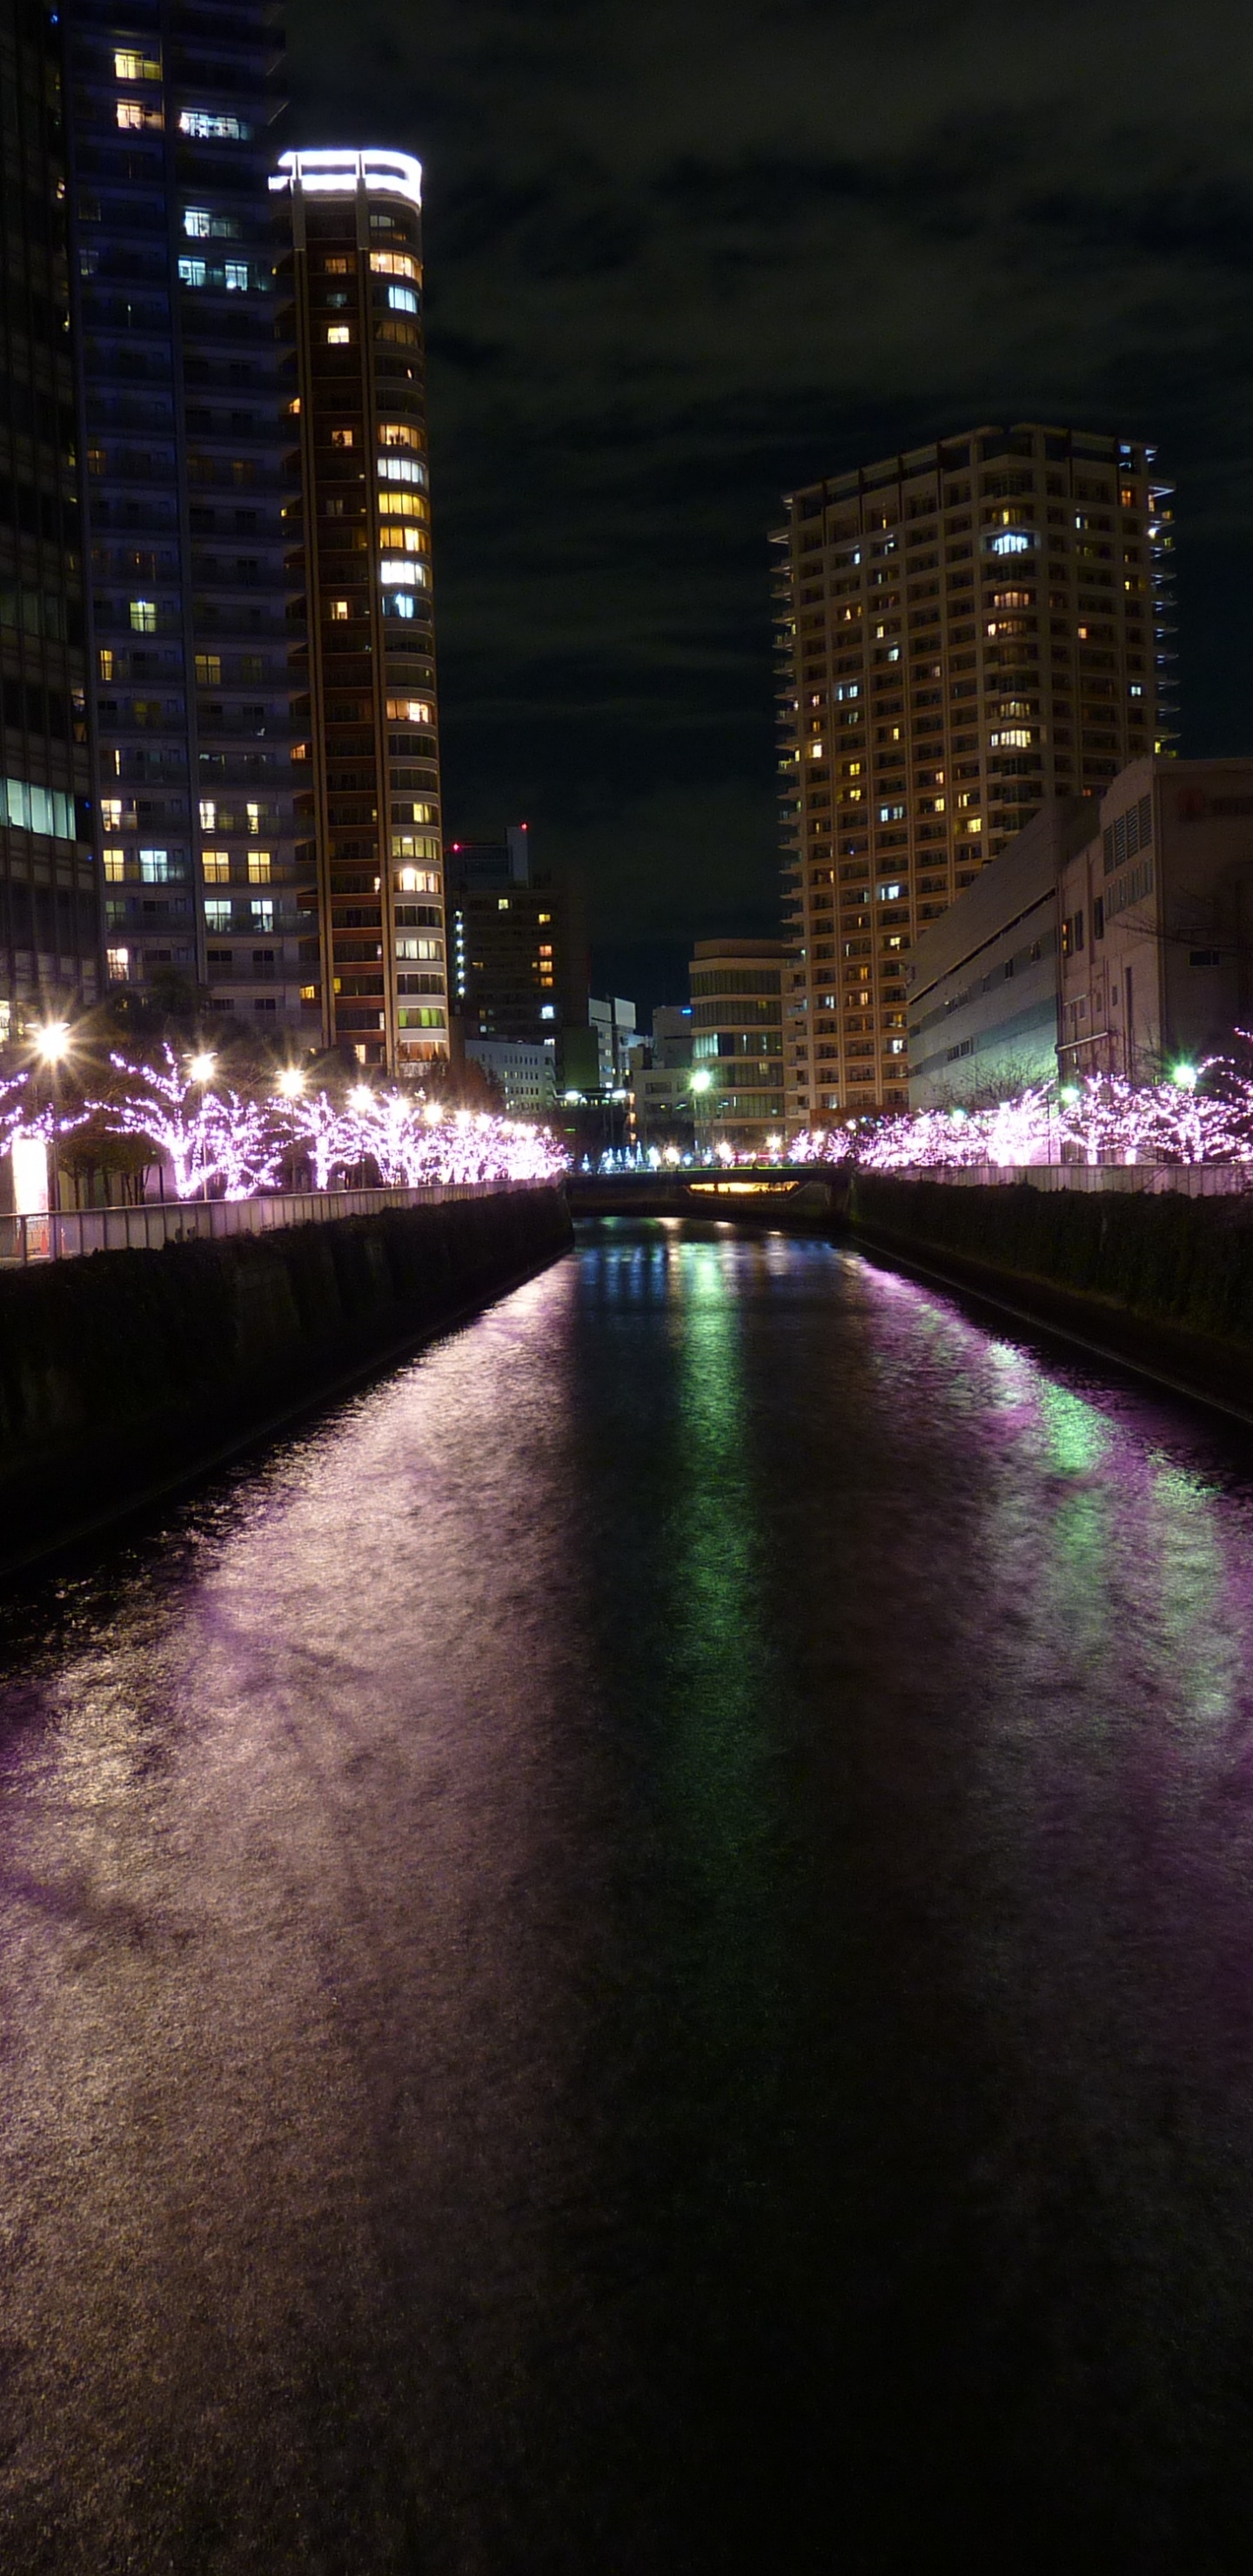 Lumières Violettes Sur le Pont Pendant la Nuit. Wallpaper in 1440x2960 Resolution